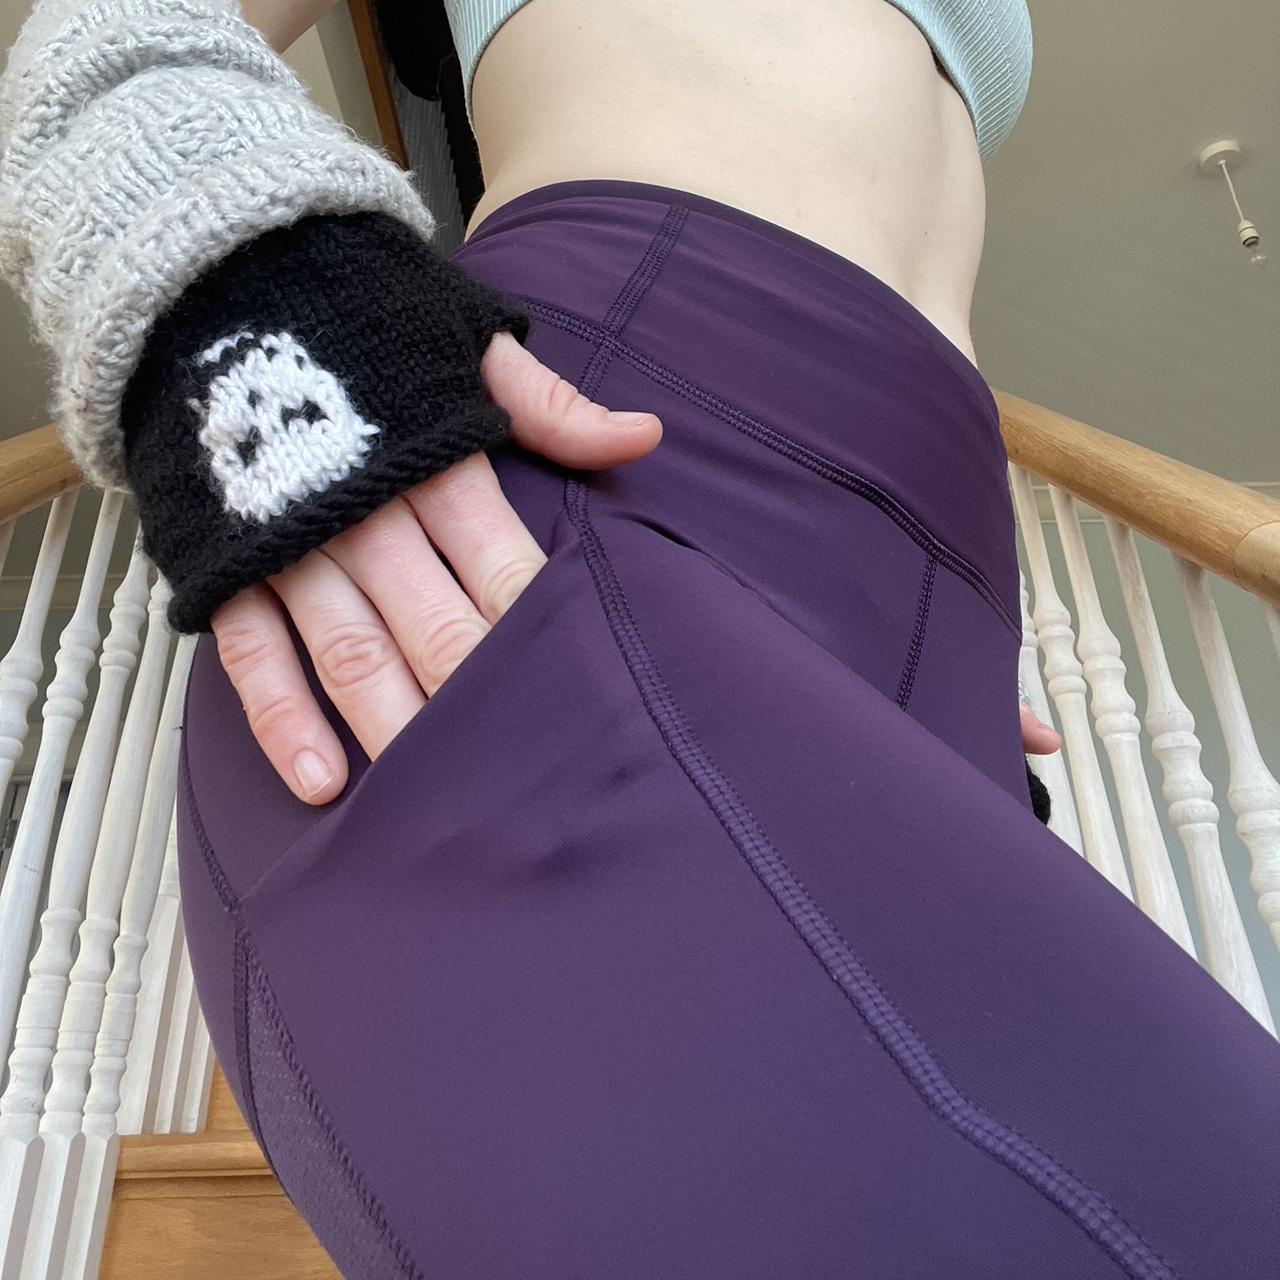 lululemon leggings size 8 purple, mesh